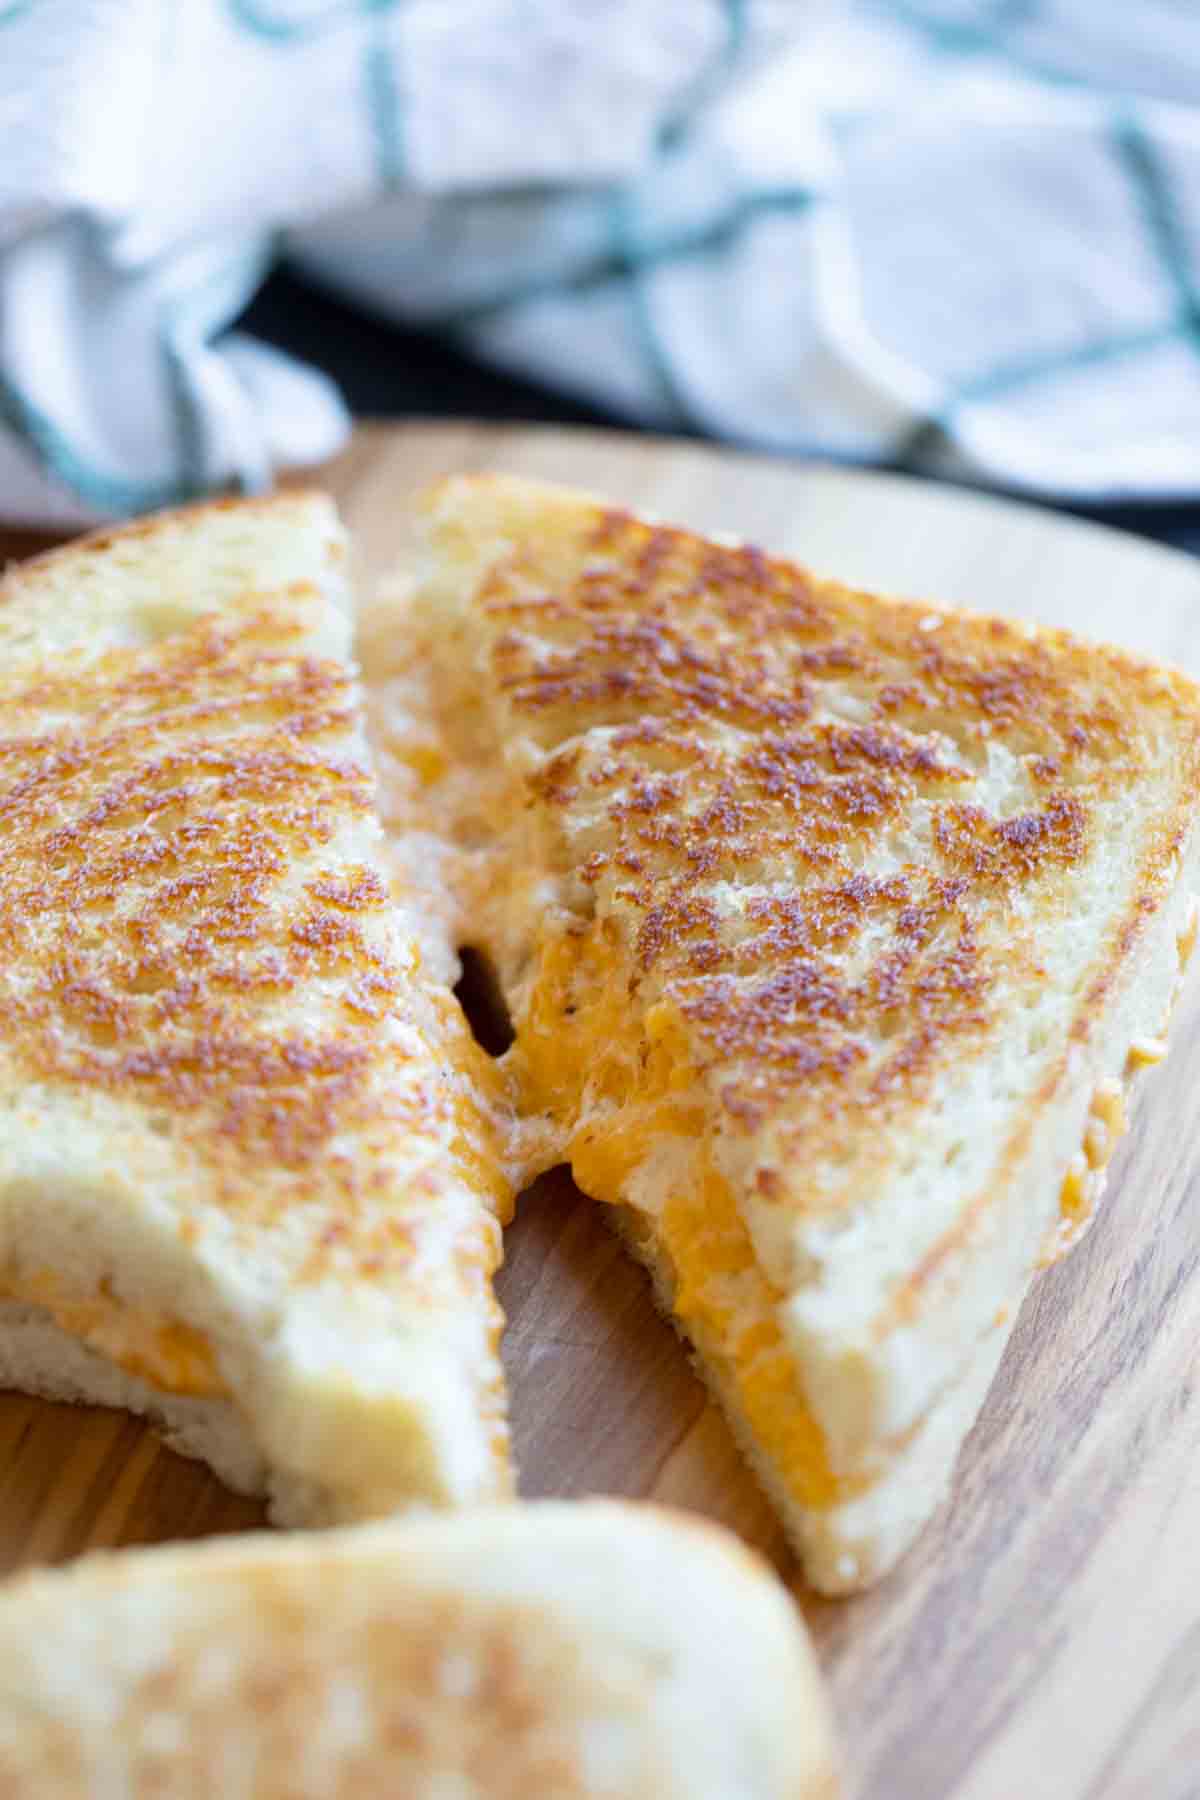 https://www.tasteandtellblog.com/wp-content/uploads/2021/10/Grilled-Cheese-Sandwich-5.jpg